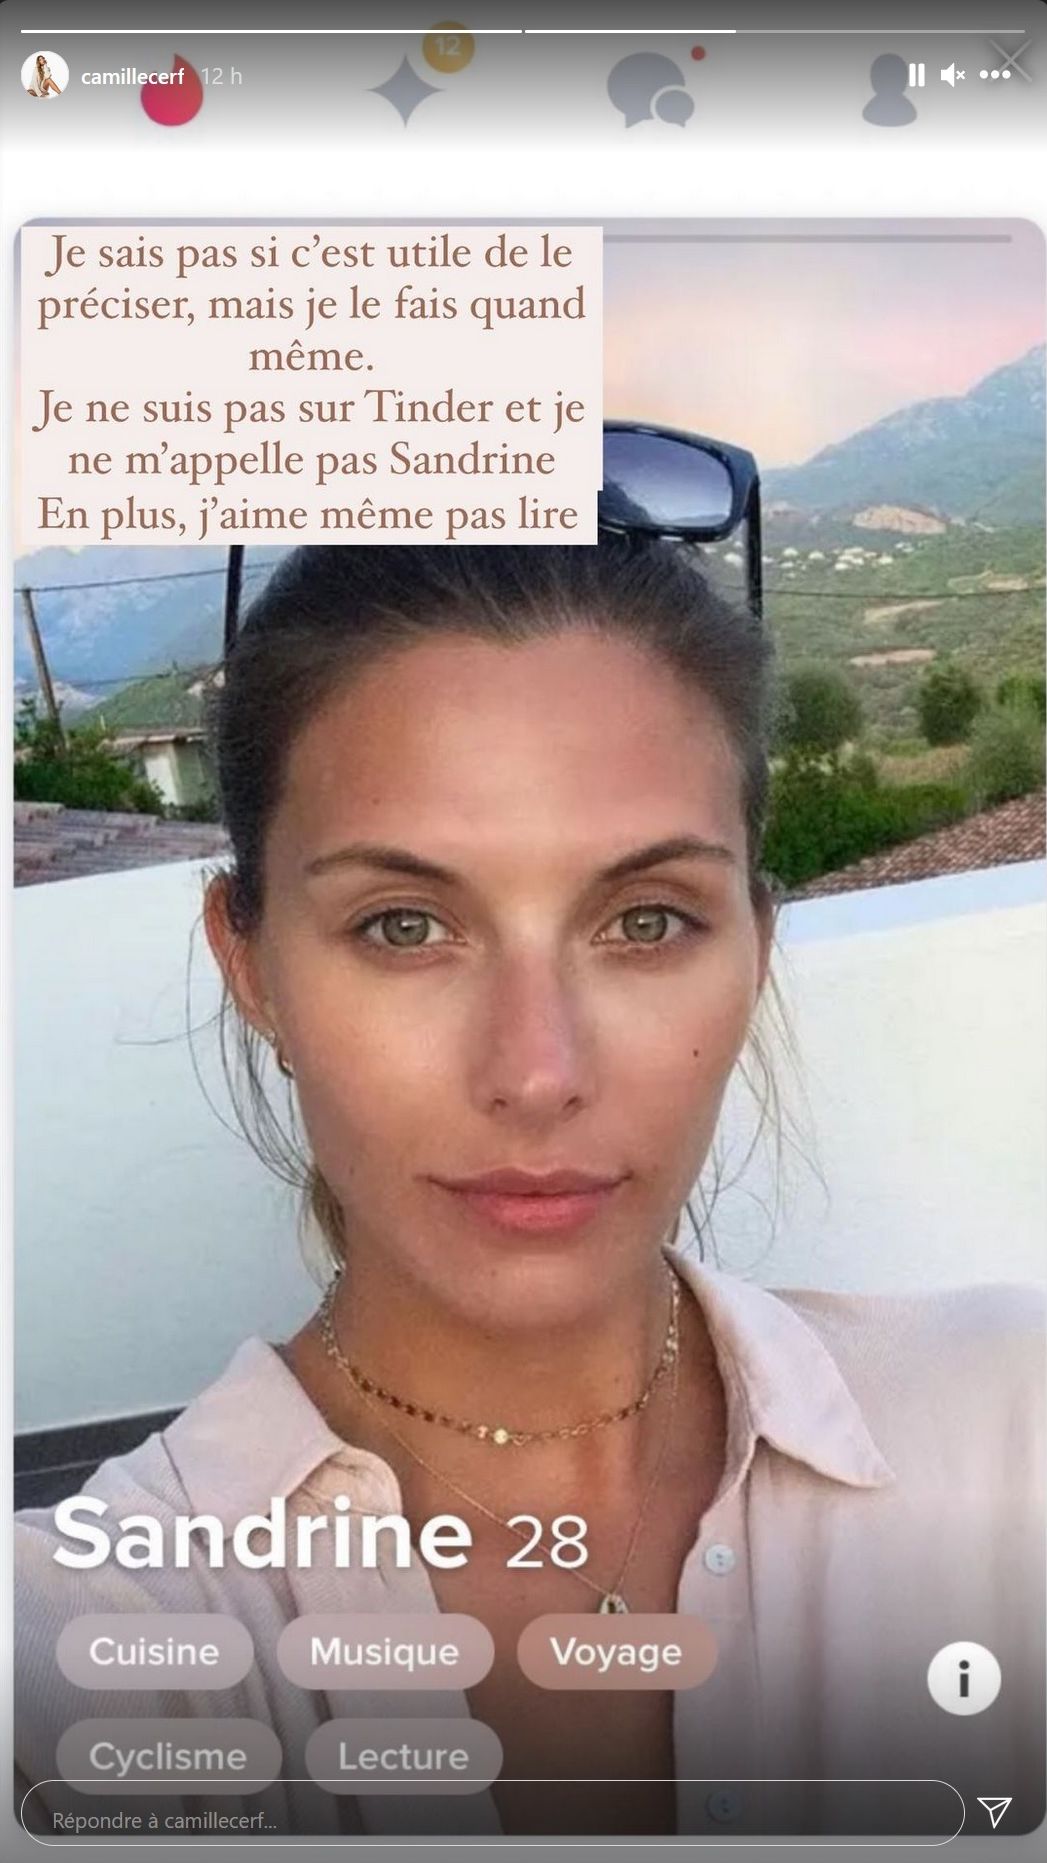  Camille Cerf victime d'usurpation d'identité sur Tinder @Instagram